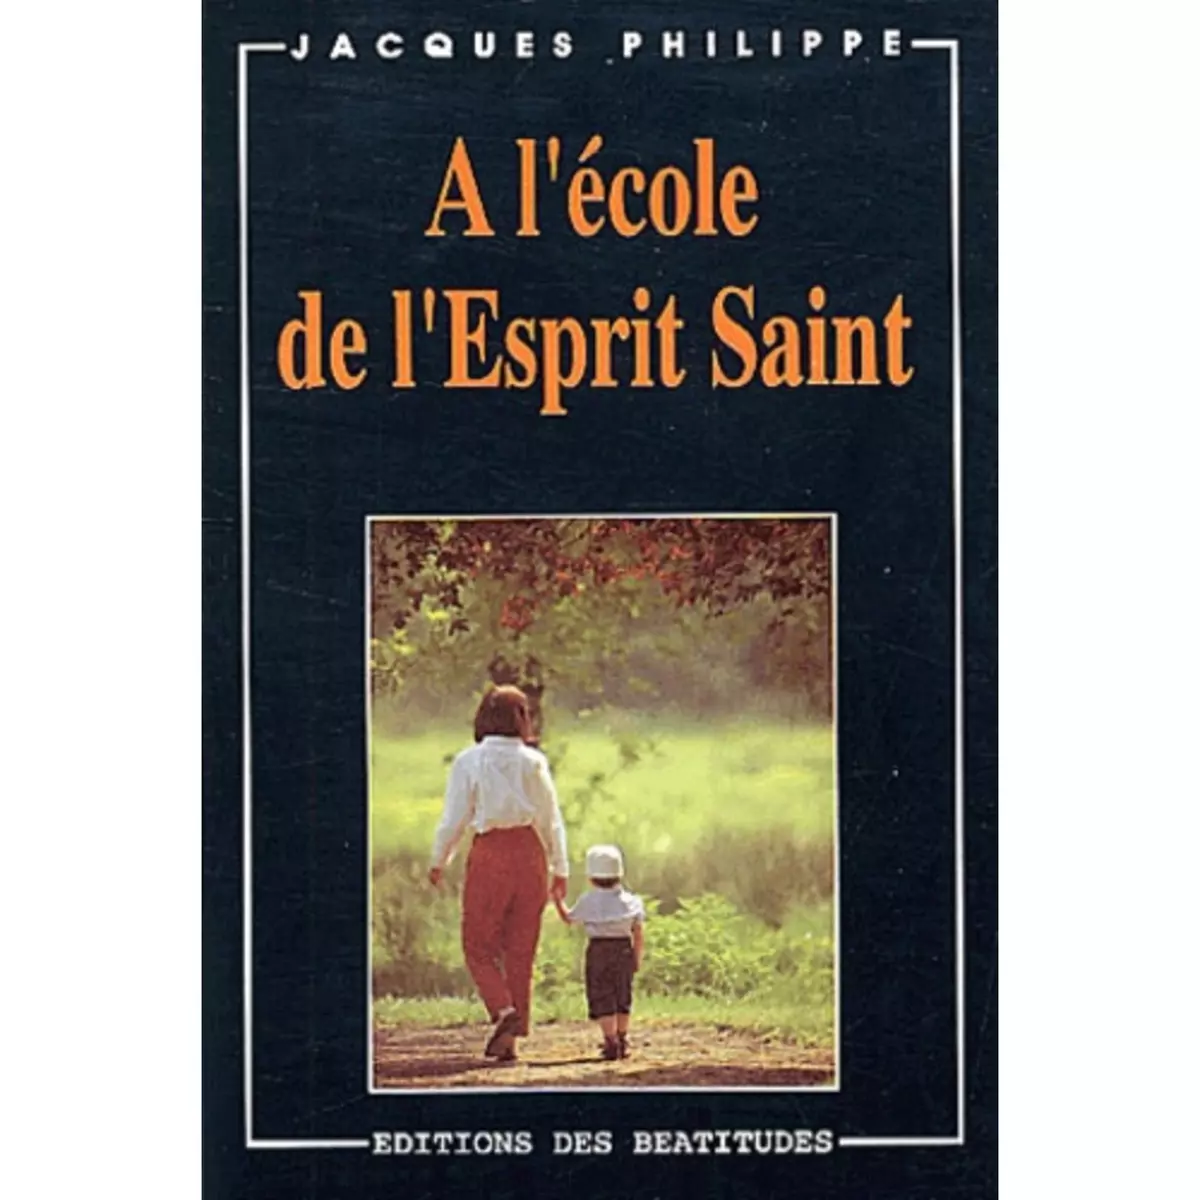  A L'ECOLE DE L'ESPRIT SAINT, Philippe Jacques